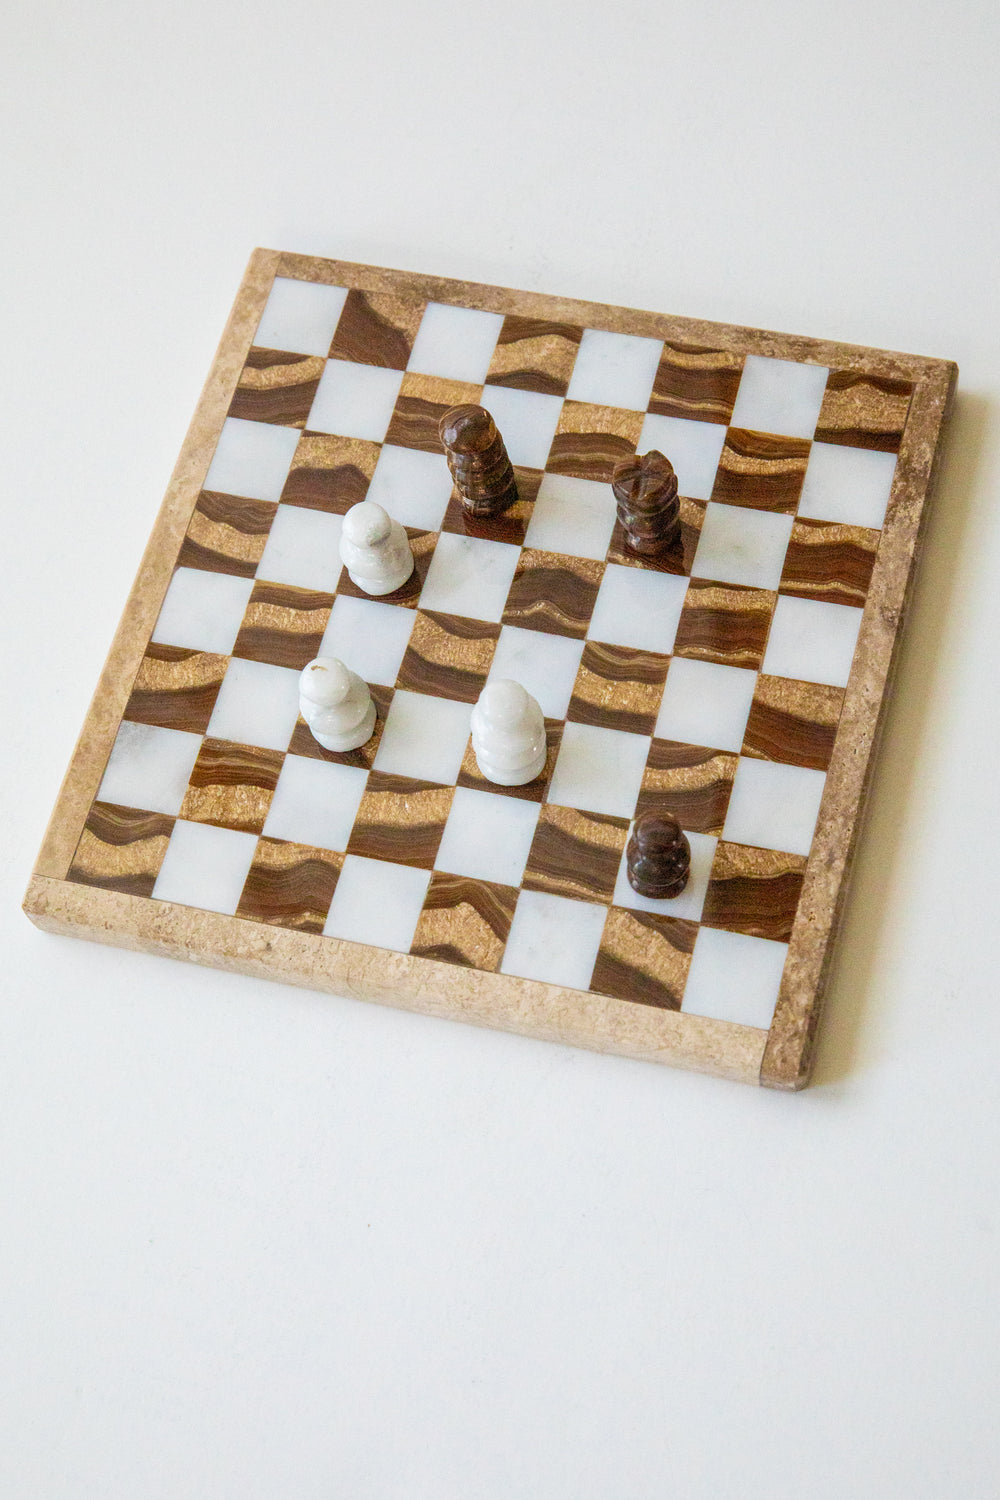 Small Onyx Chess Set